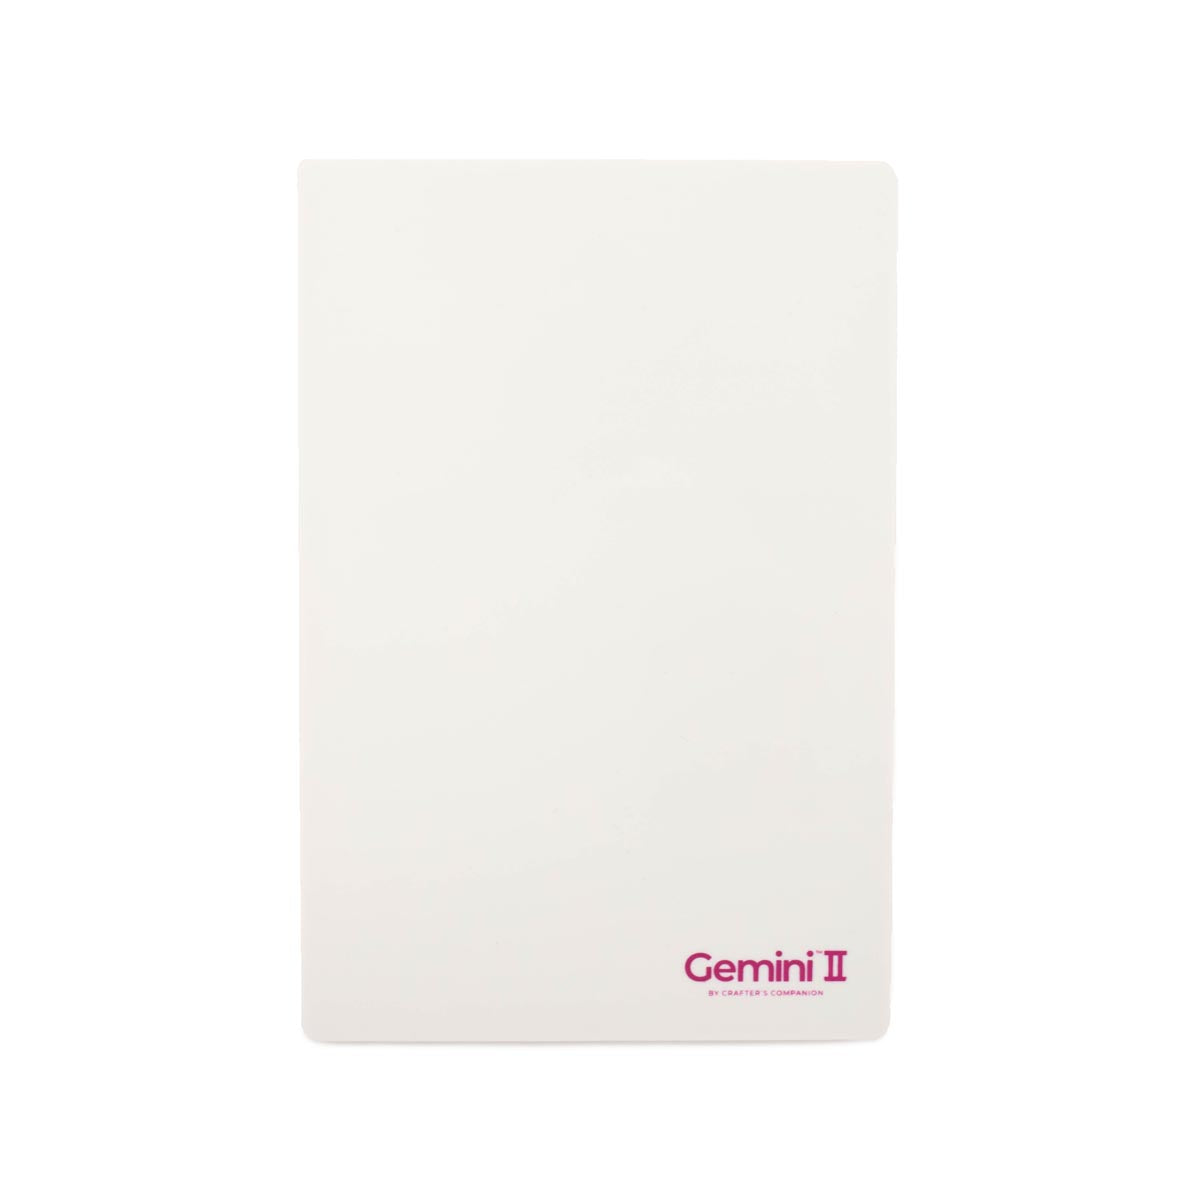 Crafter's Companion - Gemini II Accessories - Plastic Shim  9”x12.5”